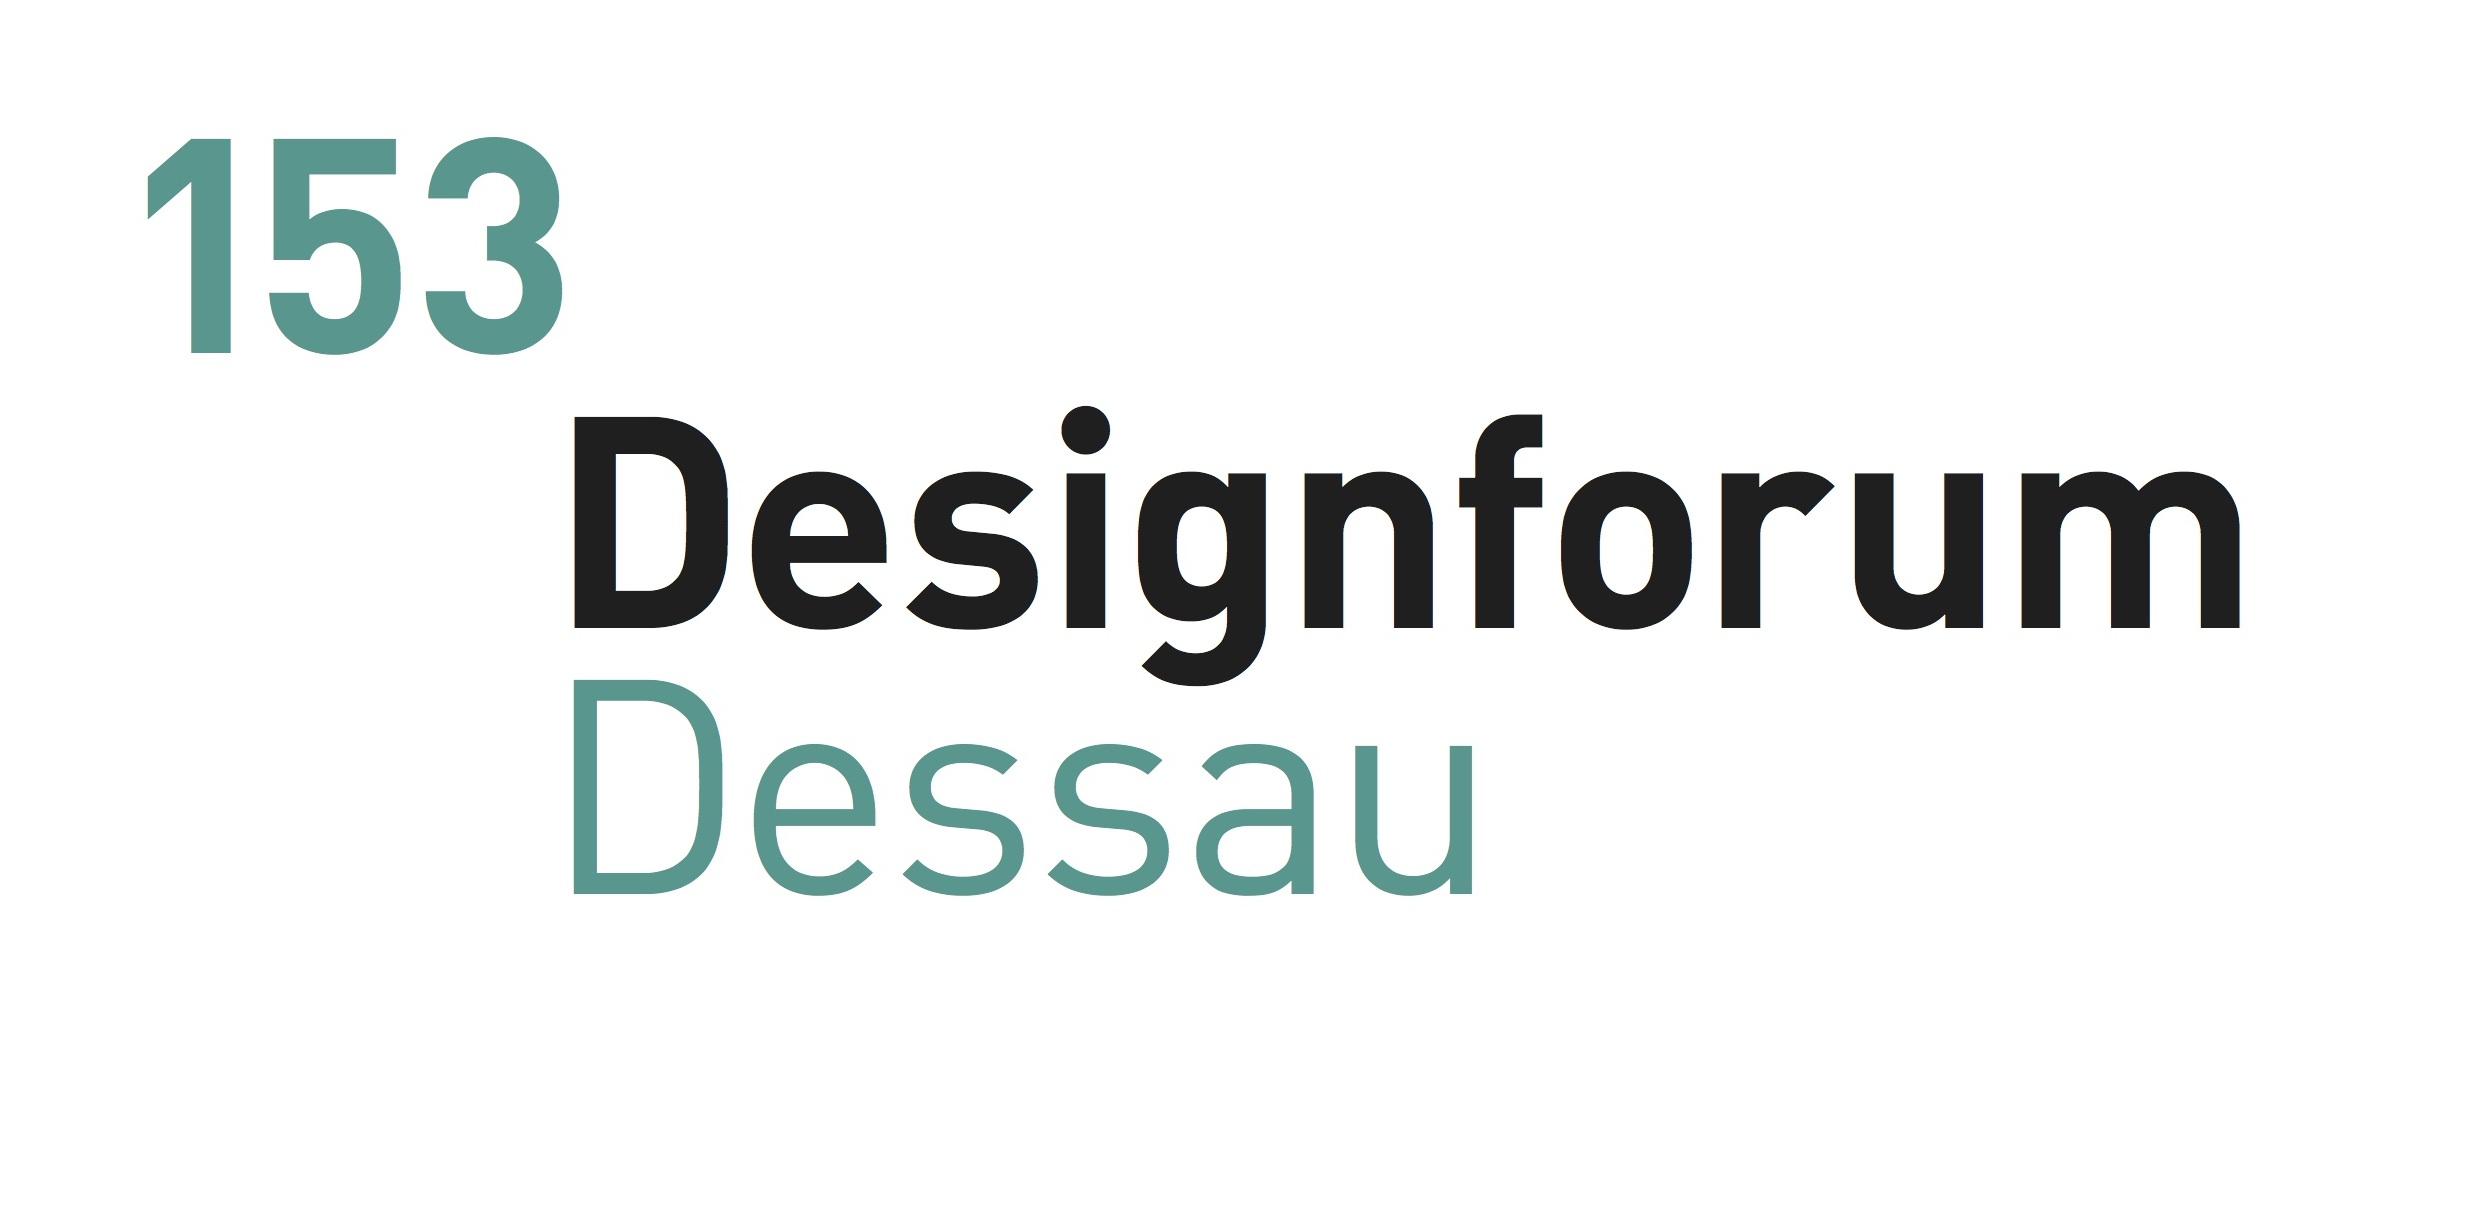 Designforum Dessau 153